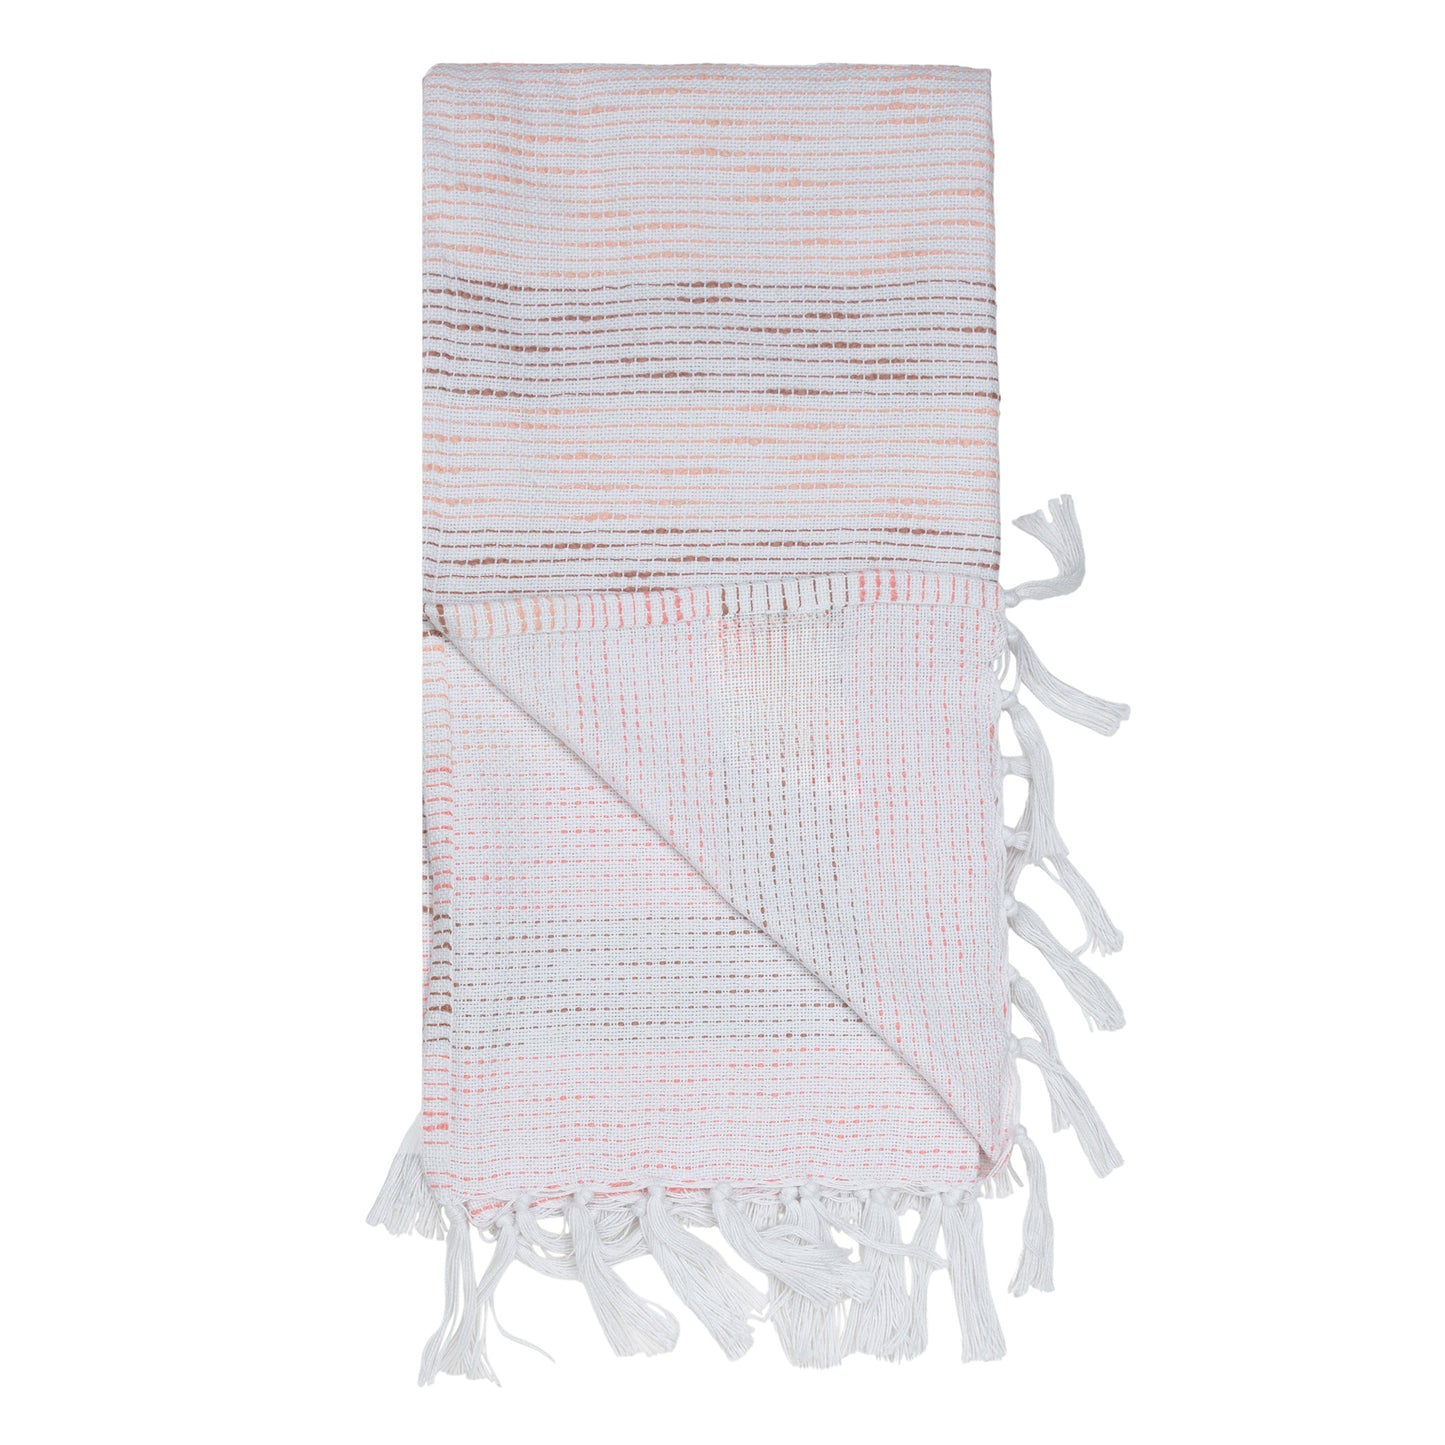 Zahara 50x70" Indoor/Outdoor Recycled Woven Throw Blanket